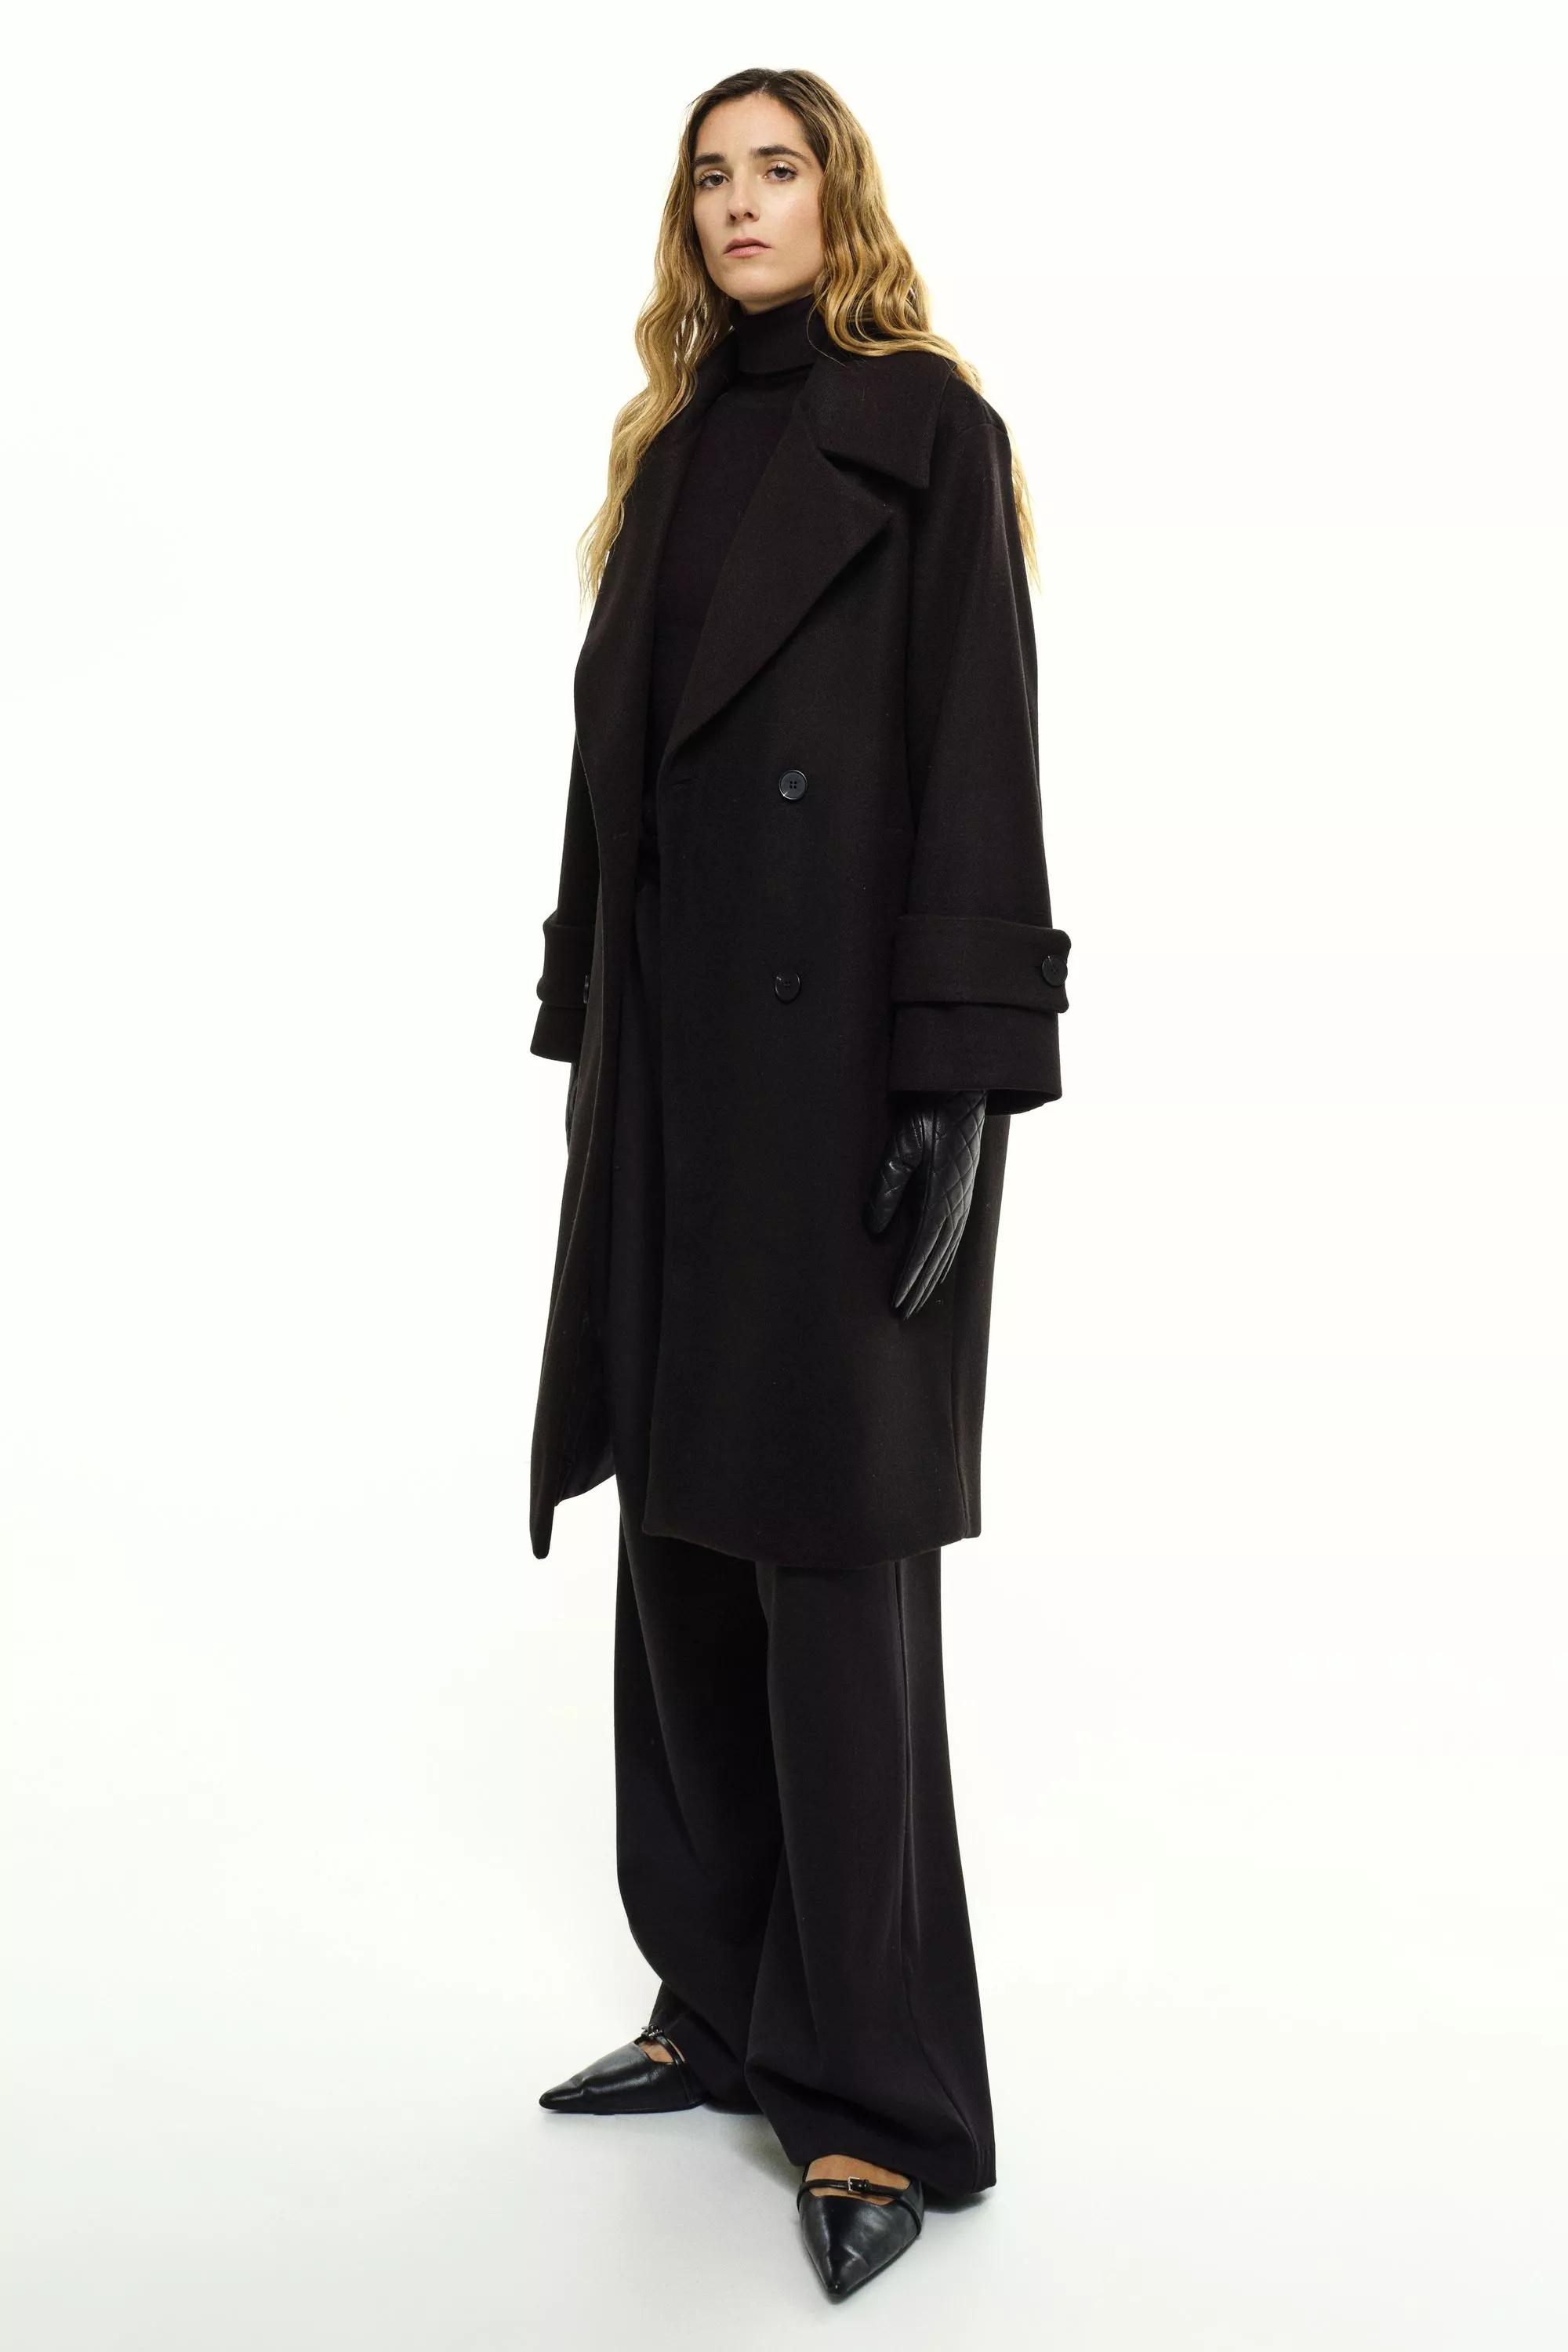 Damen Zweireihiger Mantel in Schwarz von Ricano, Frontansicht am Model (3)